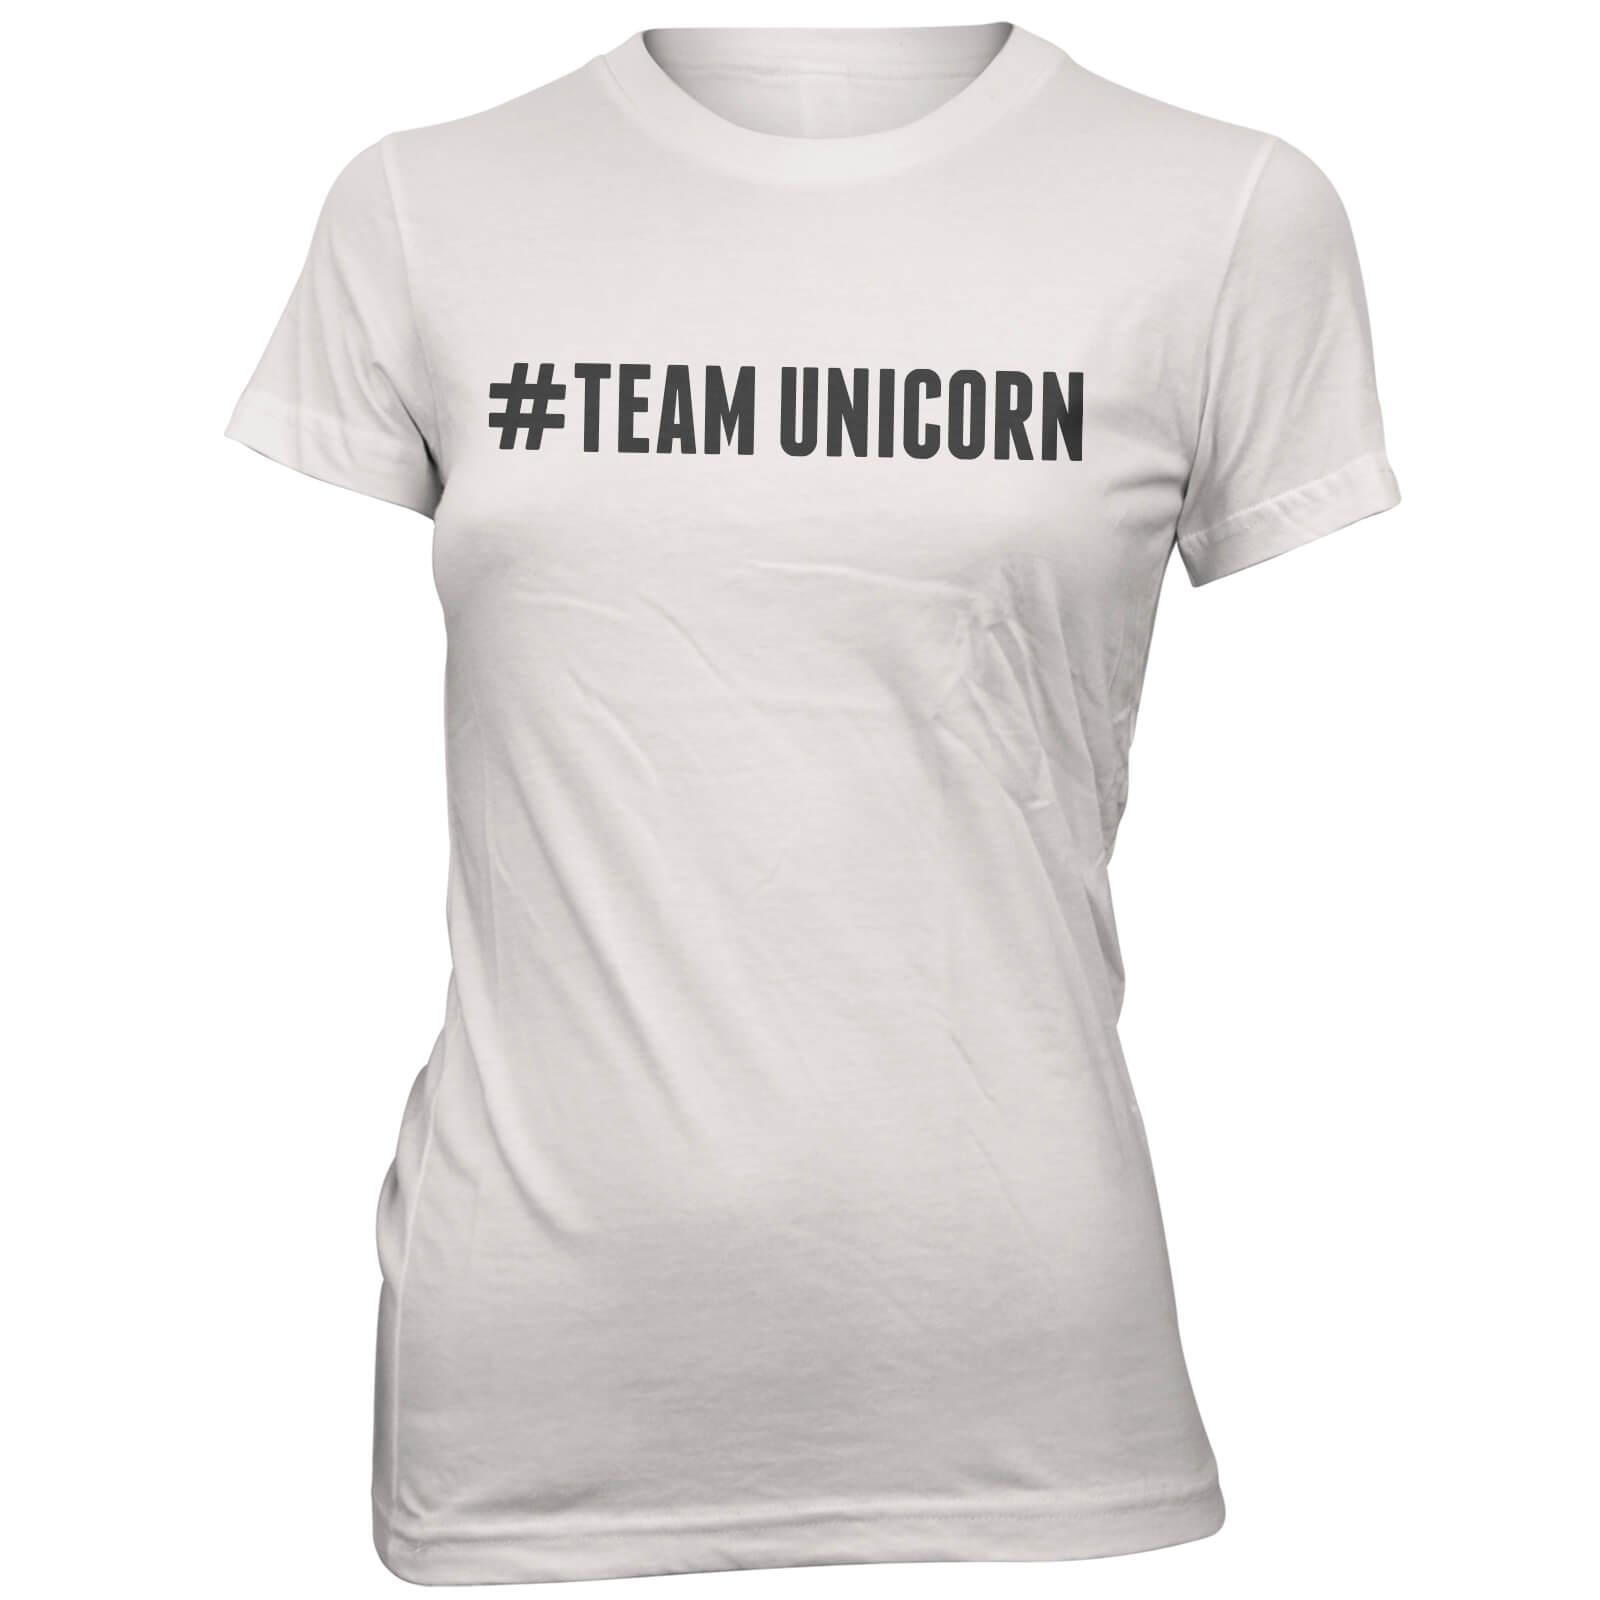 Hashtag Team Unicorn Women's White T-Shirt - S - White